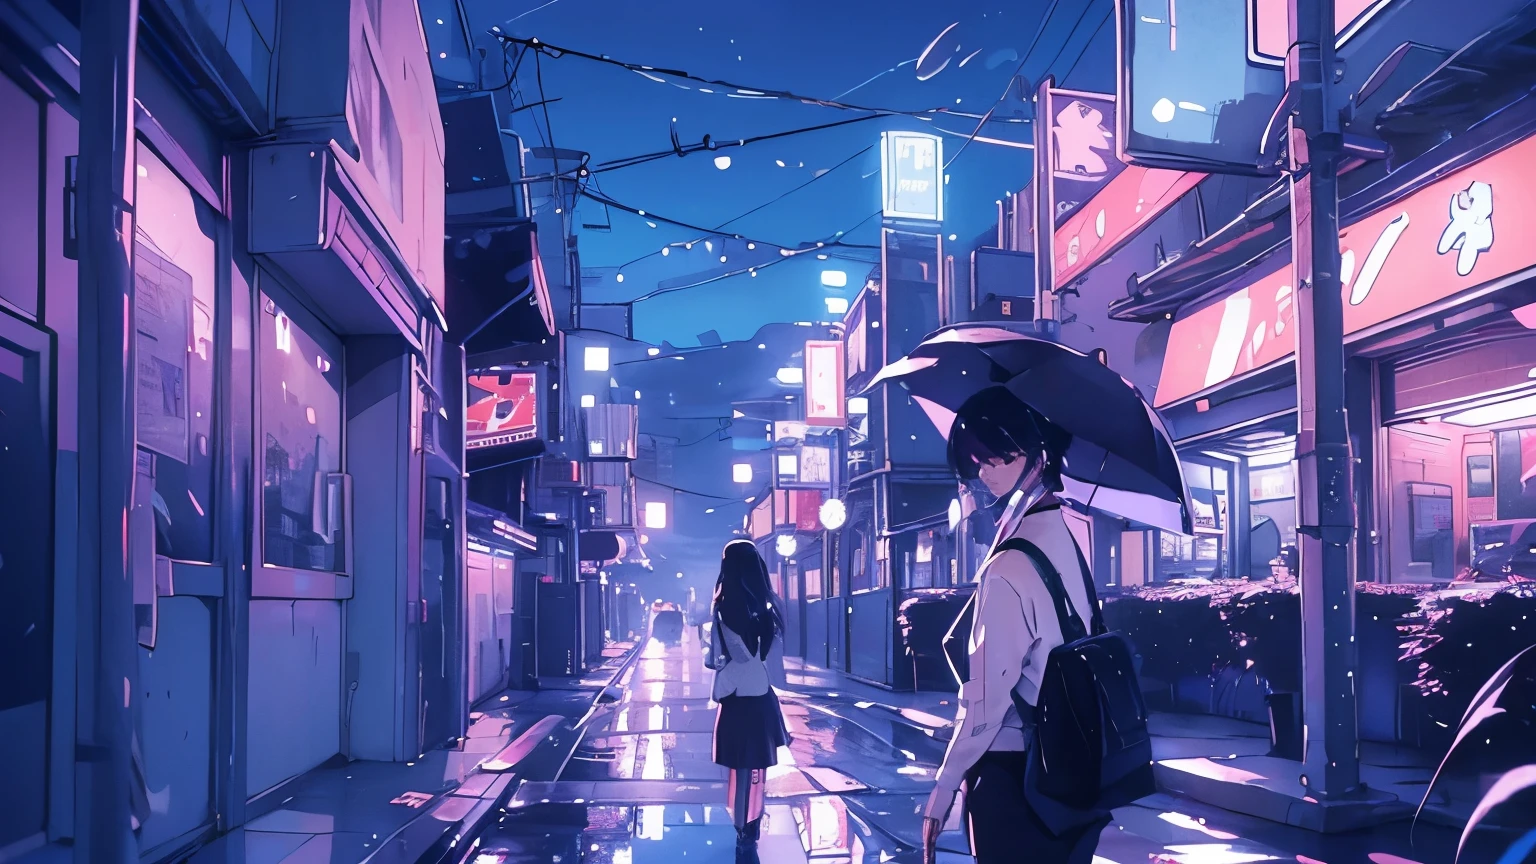 비가 시트에 떨어지다, 우산을 들고 걸어가는 외로운 여자의 도시 거리의 네온 불빛을 반사하며.